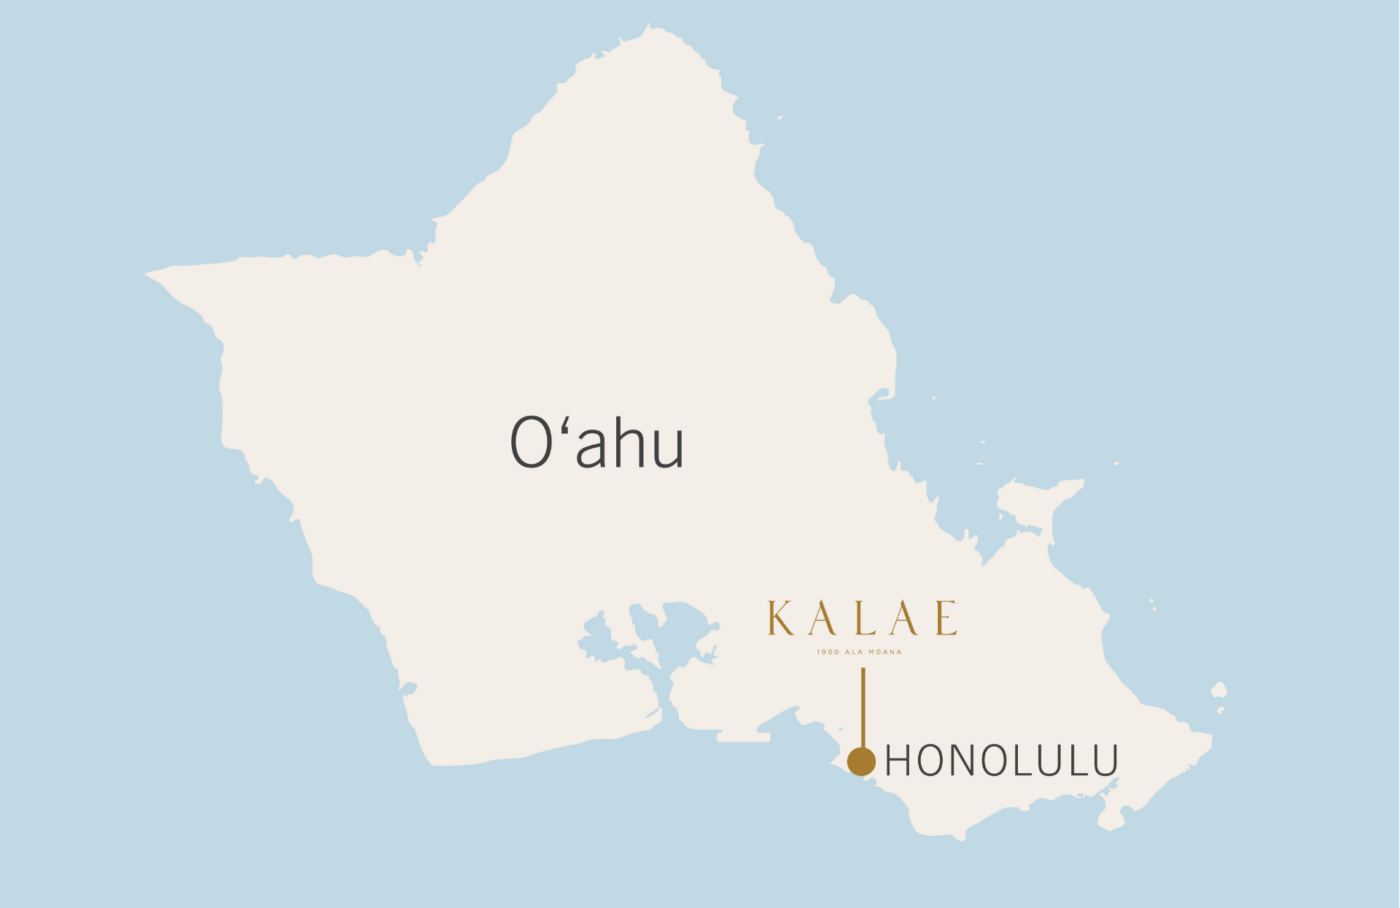 Oahu map with Kalae and Honolulu call out.